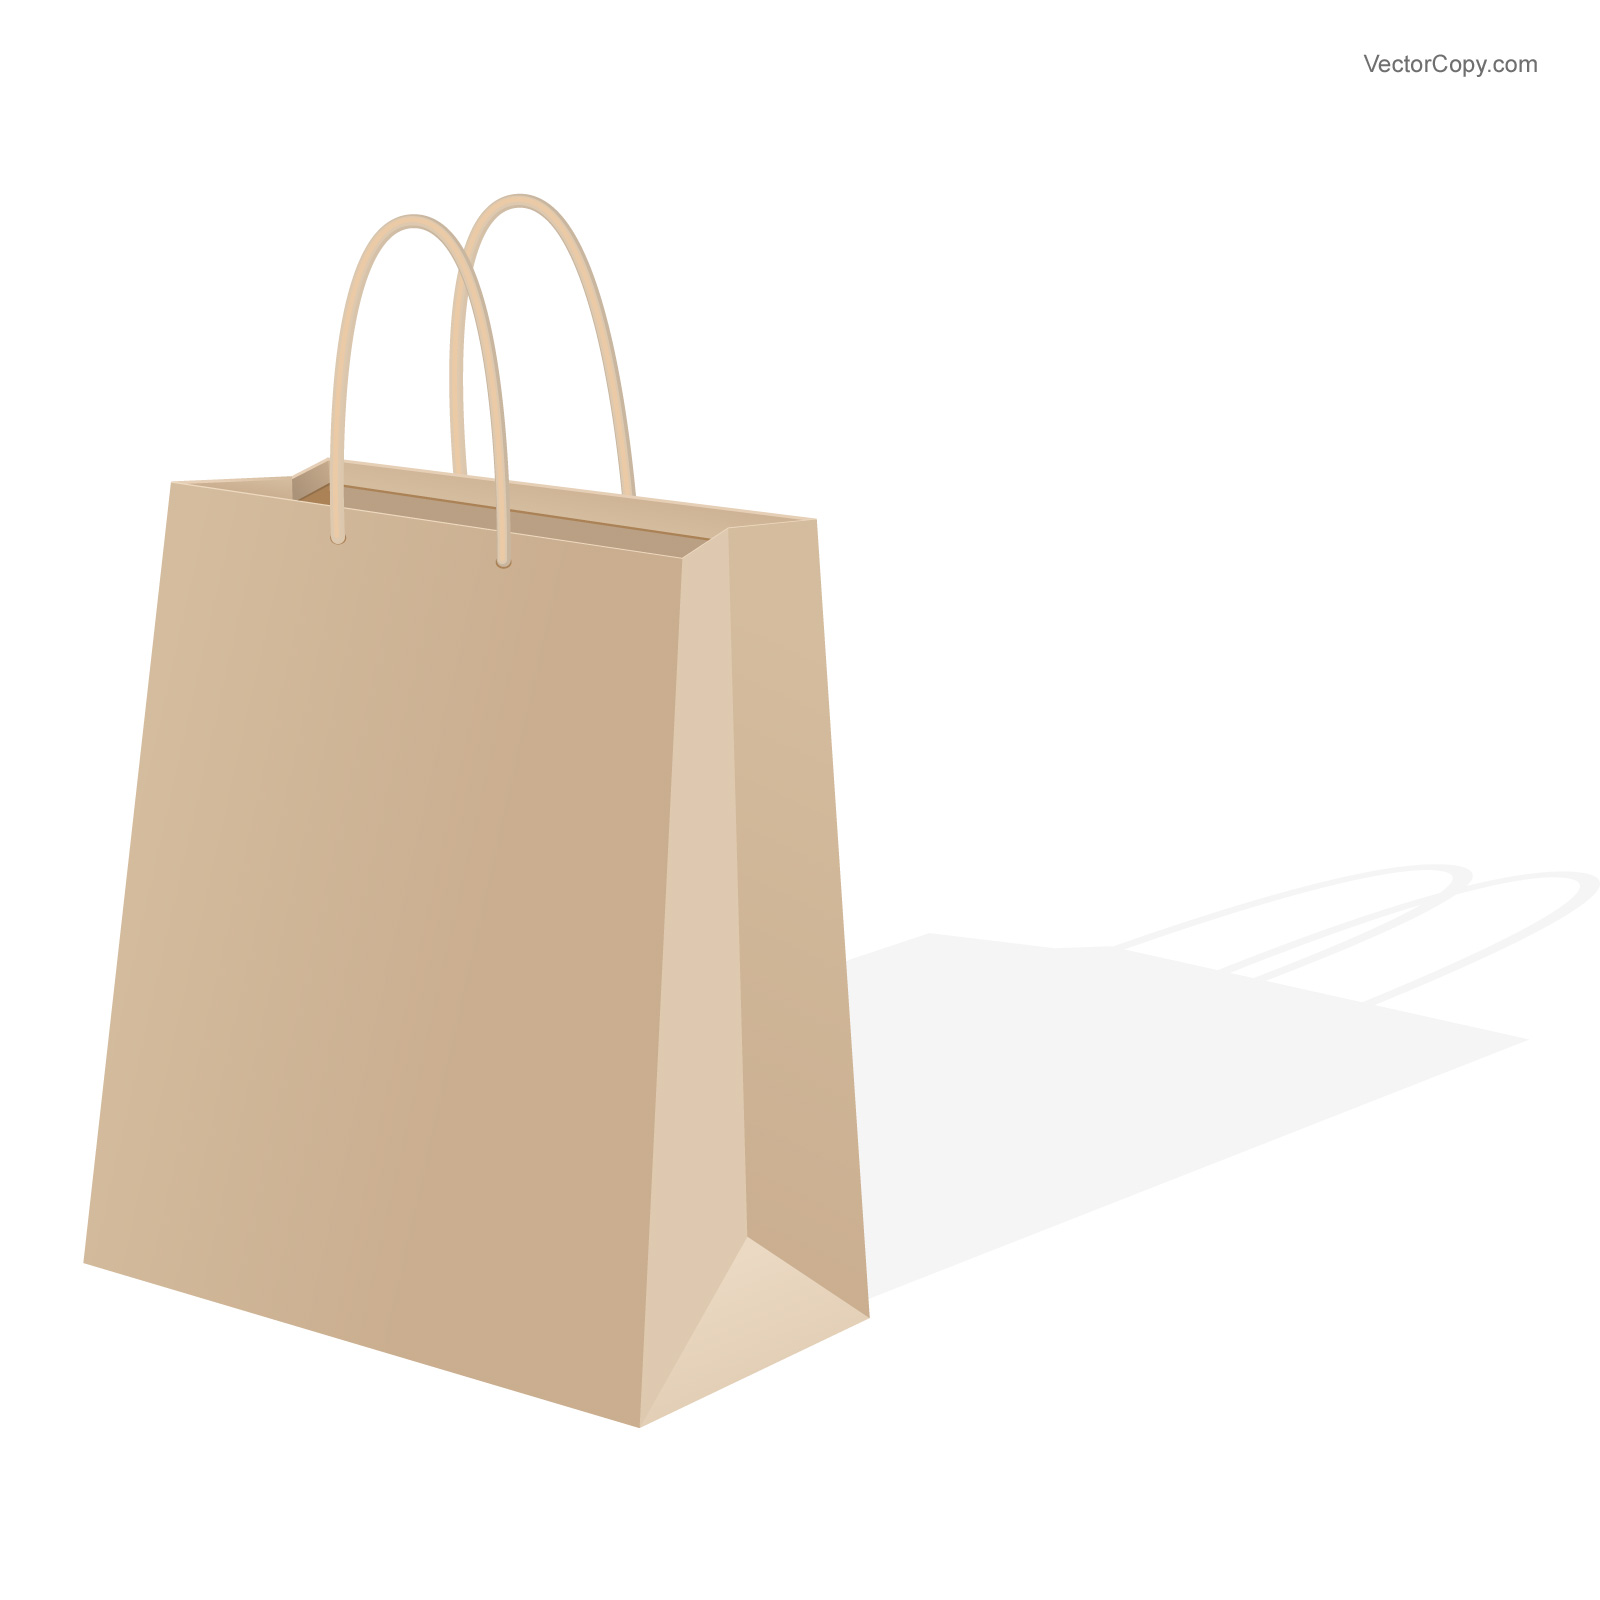 Shopping Bag Vector Image Shopping Bag Vector Free, Shopping Bag Icon Vector and Black Shopping Bag Vector / Newdesignfile.com